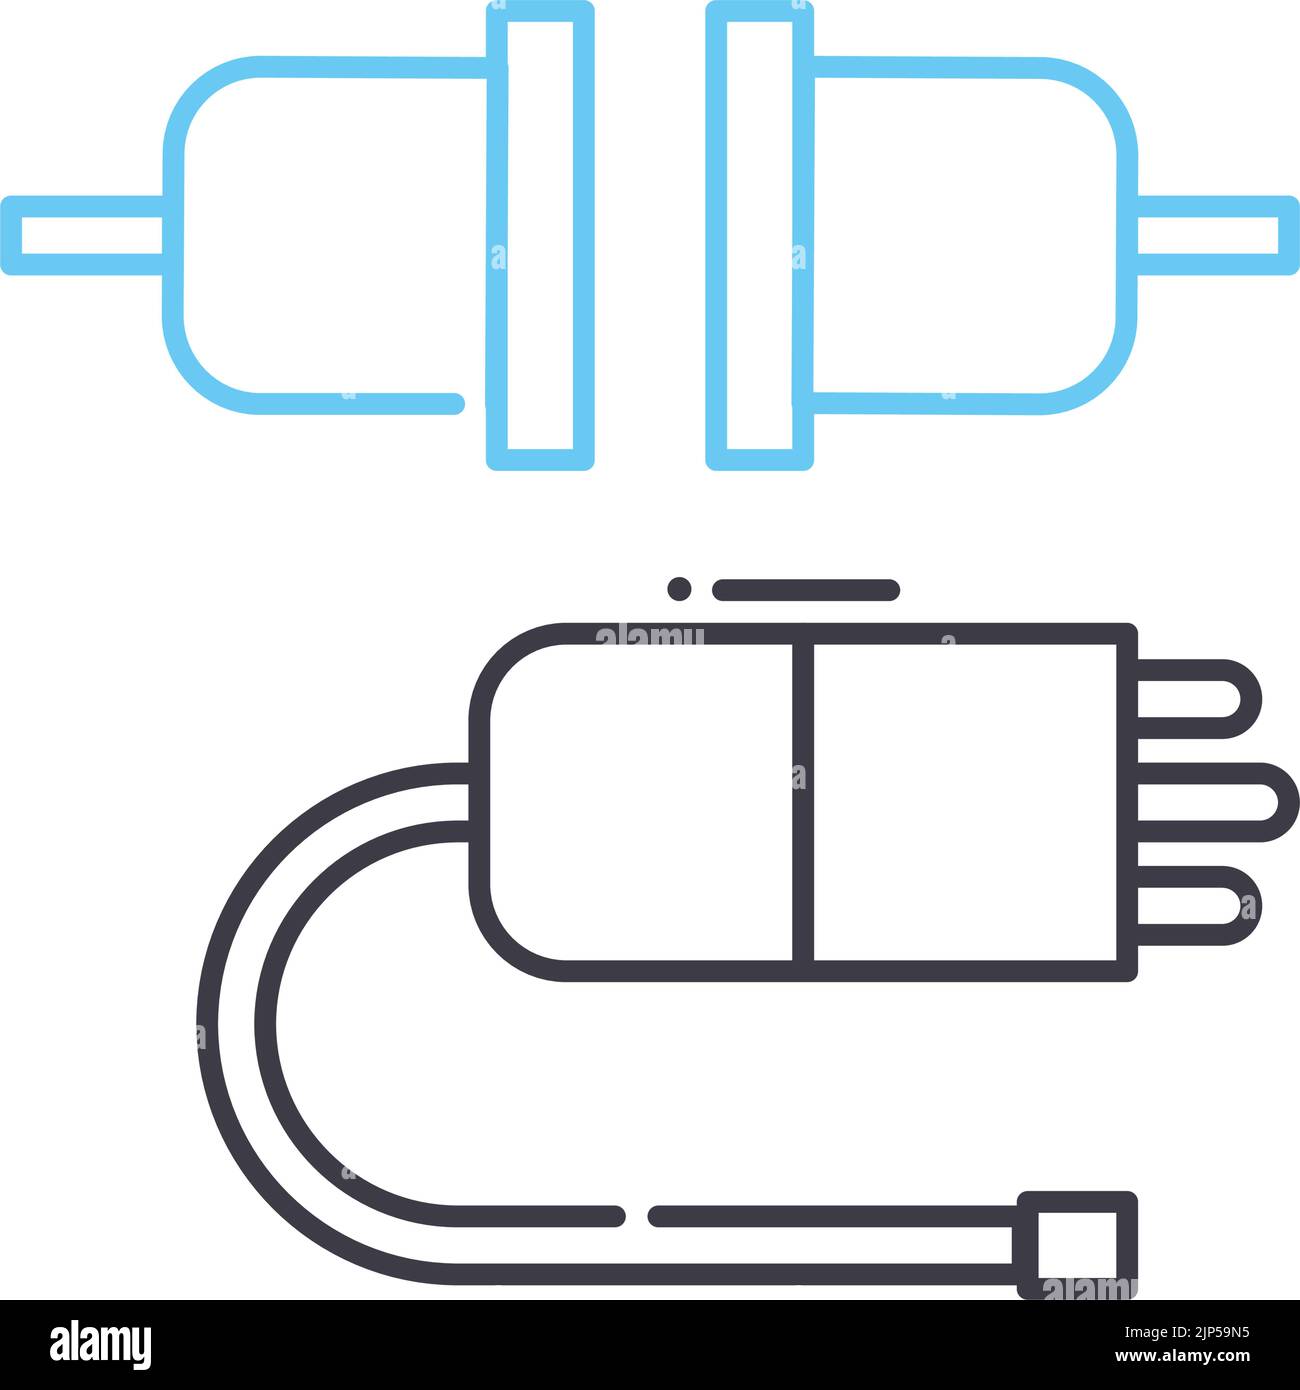 Liniensymbol für Verbindungskabel, Umrisssymbol, Vektorgrafik, Konzeptschild Stock Vektor